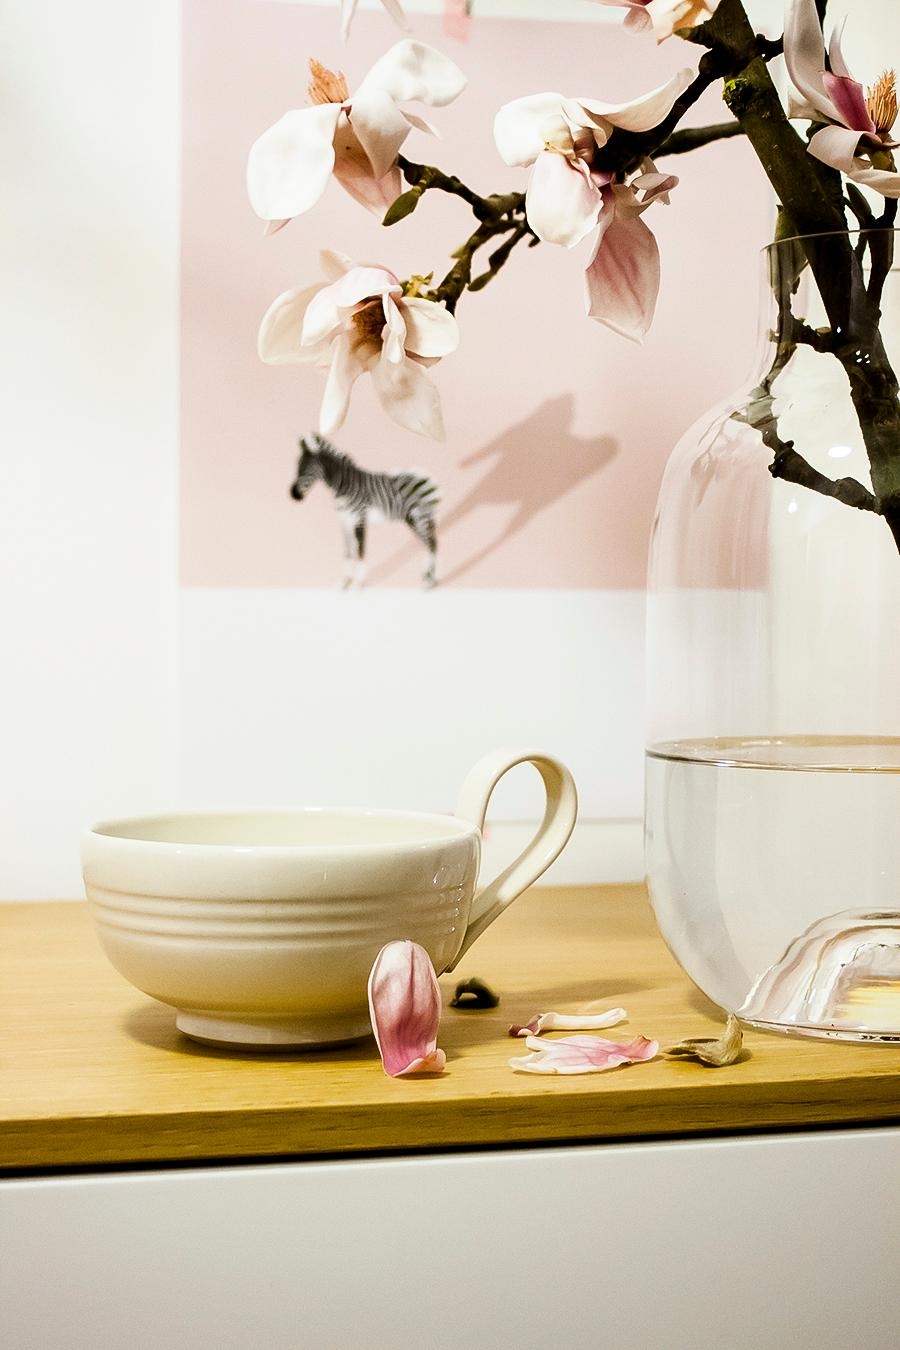 #magnolien an #teetasse #freshflowerfriday #couchliebt #glasvase #housedoctor #zebra #rosa #blüten #zweig #3punktf